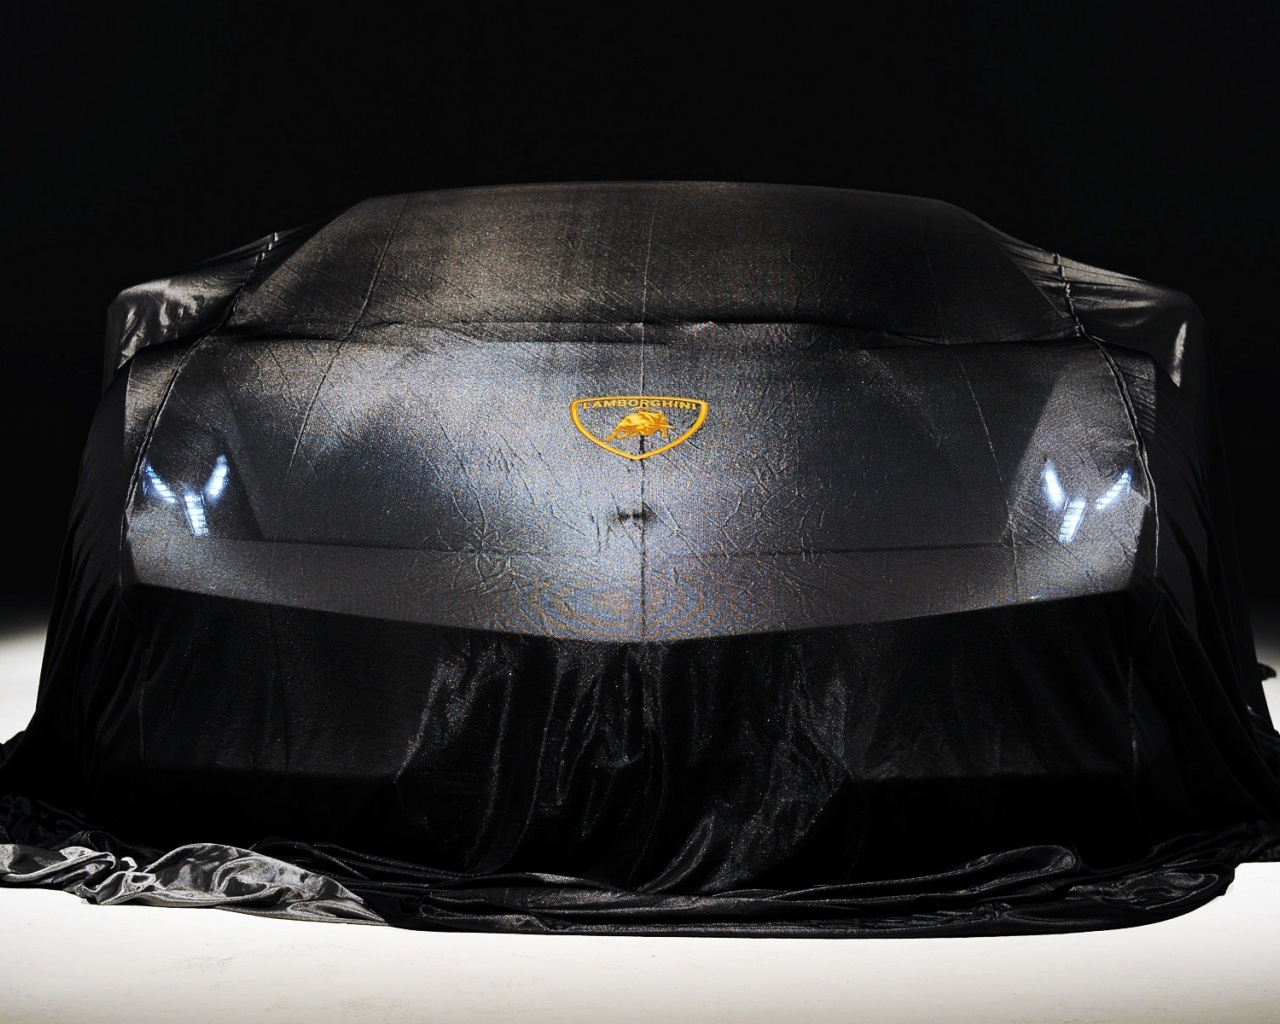 Lamborghini 2010 La Auto Show